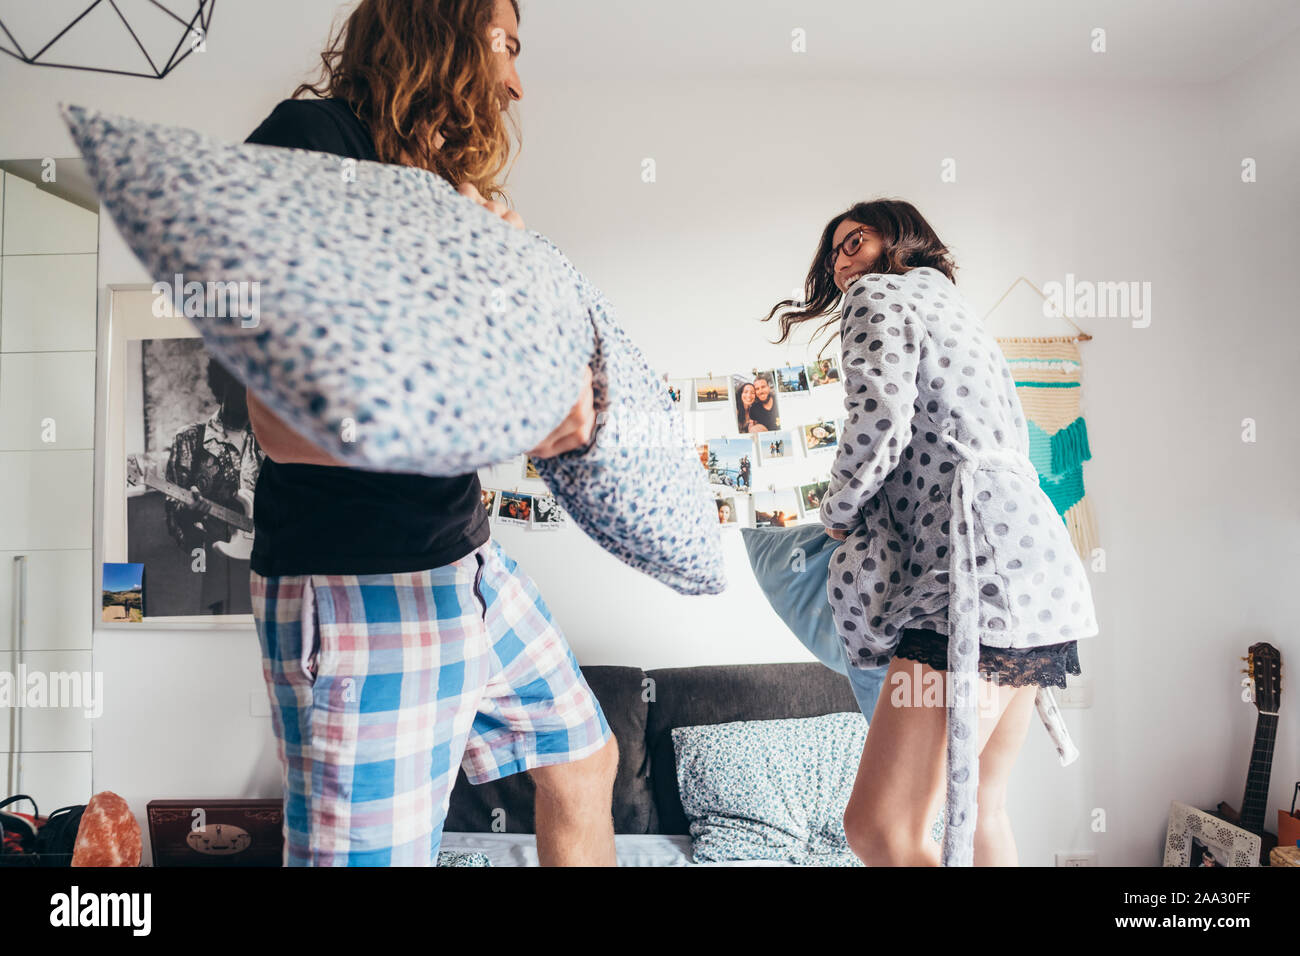 Joven pareja feliz almohada playfighting dormitorio interior - divertirse jugando, concepto positivo Foto de stock